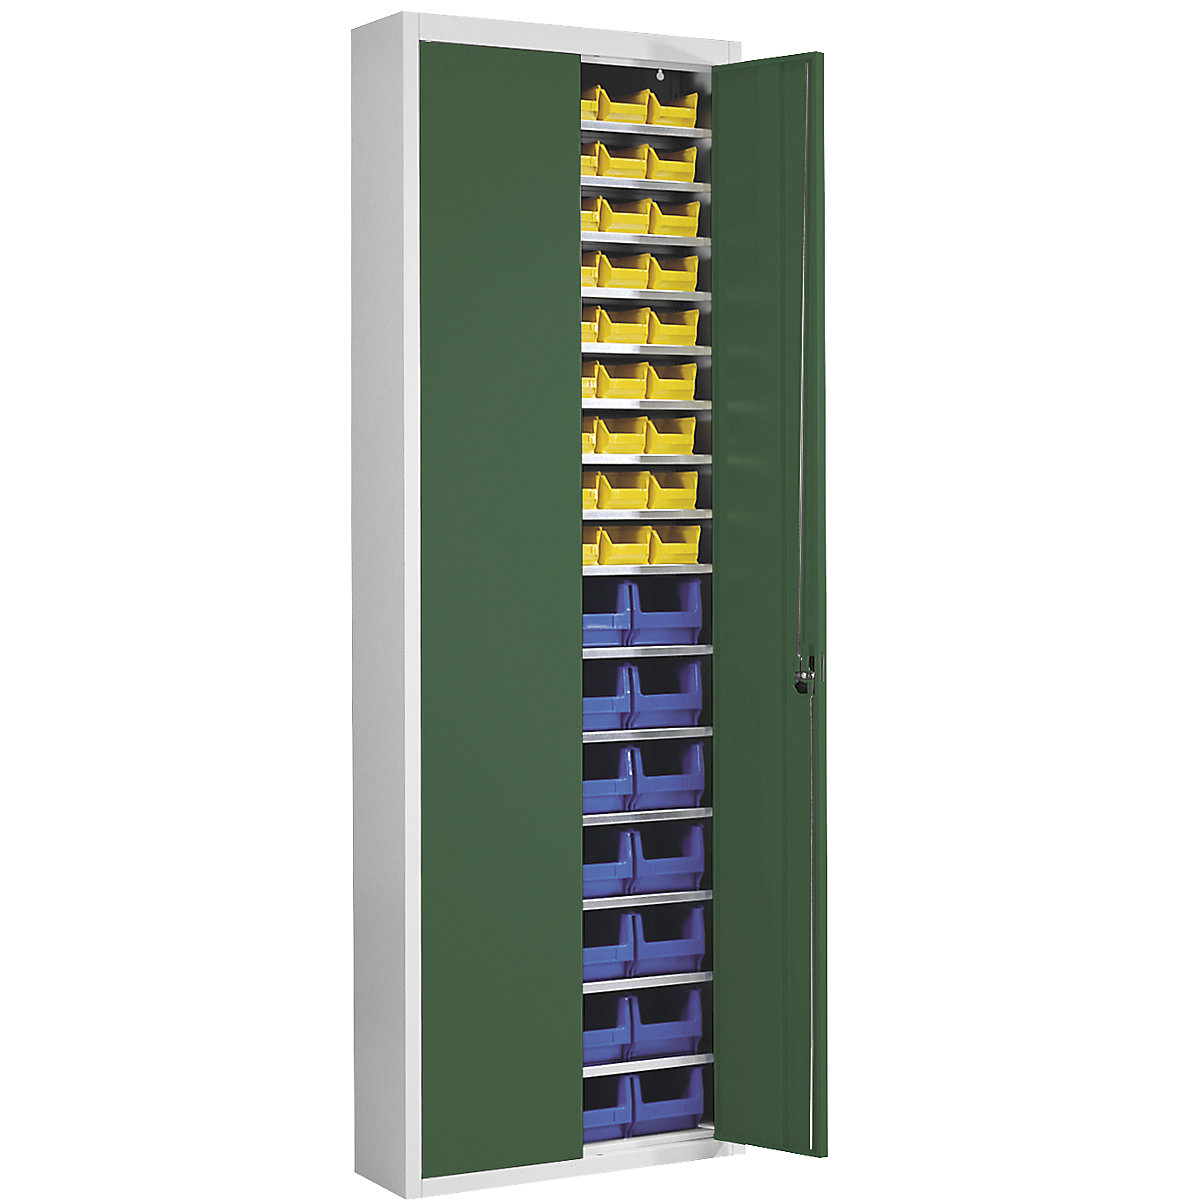 Skladišni ormar s otvorenim skladišnim kutijama – mauser, VxŠxD 2150 x 680 x 280 mm, u dvije boje, korpus u sivoj boji, vrata u zelenoj boji, 82 kutije-7